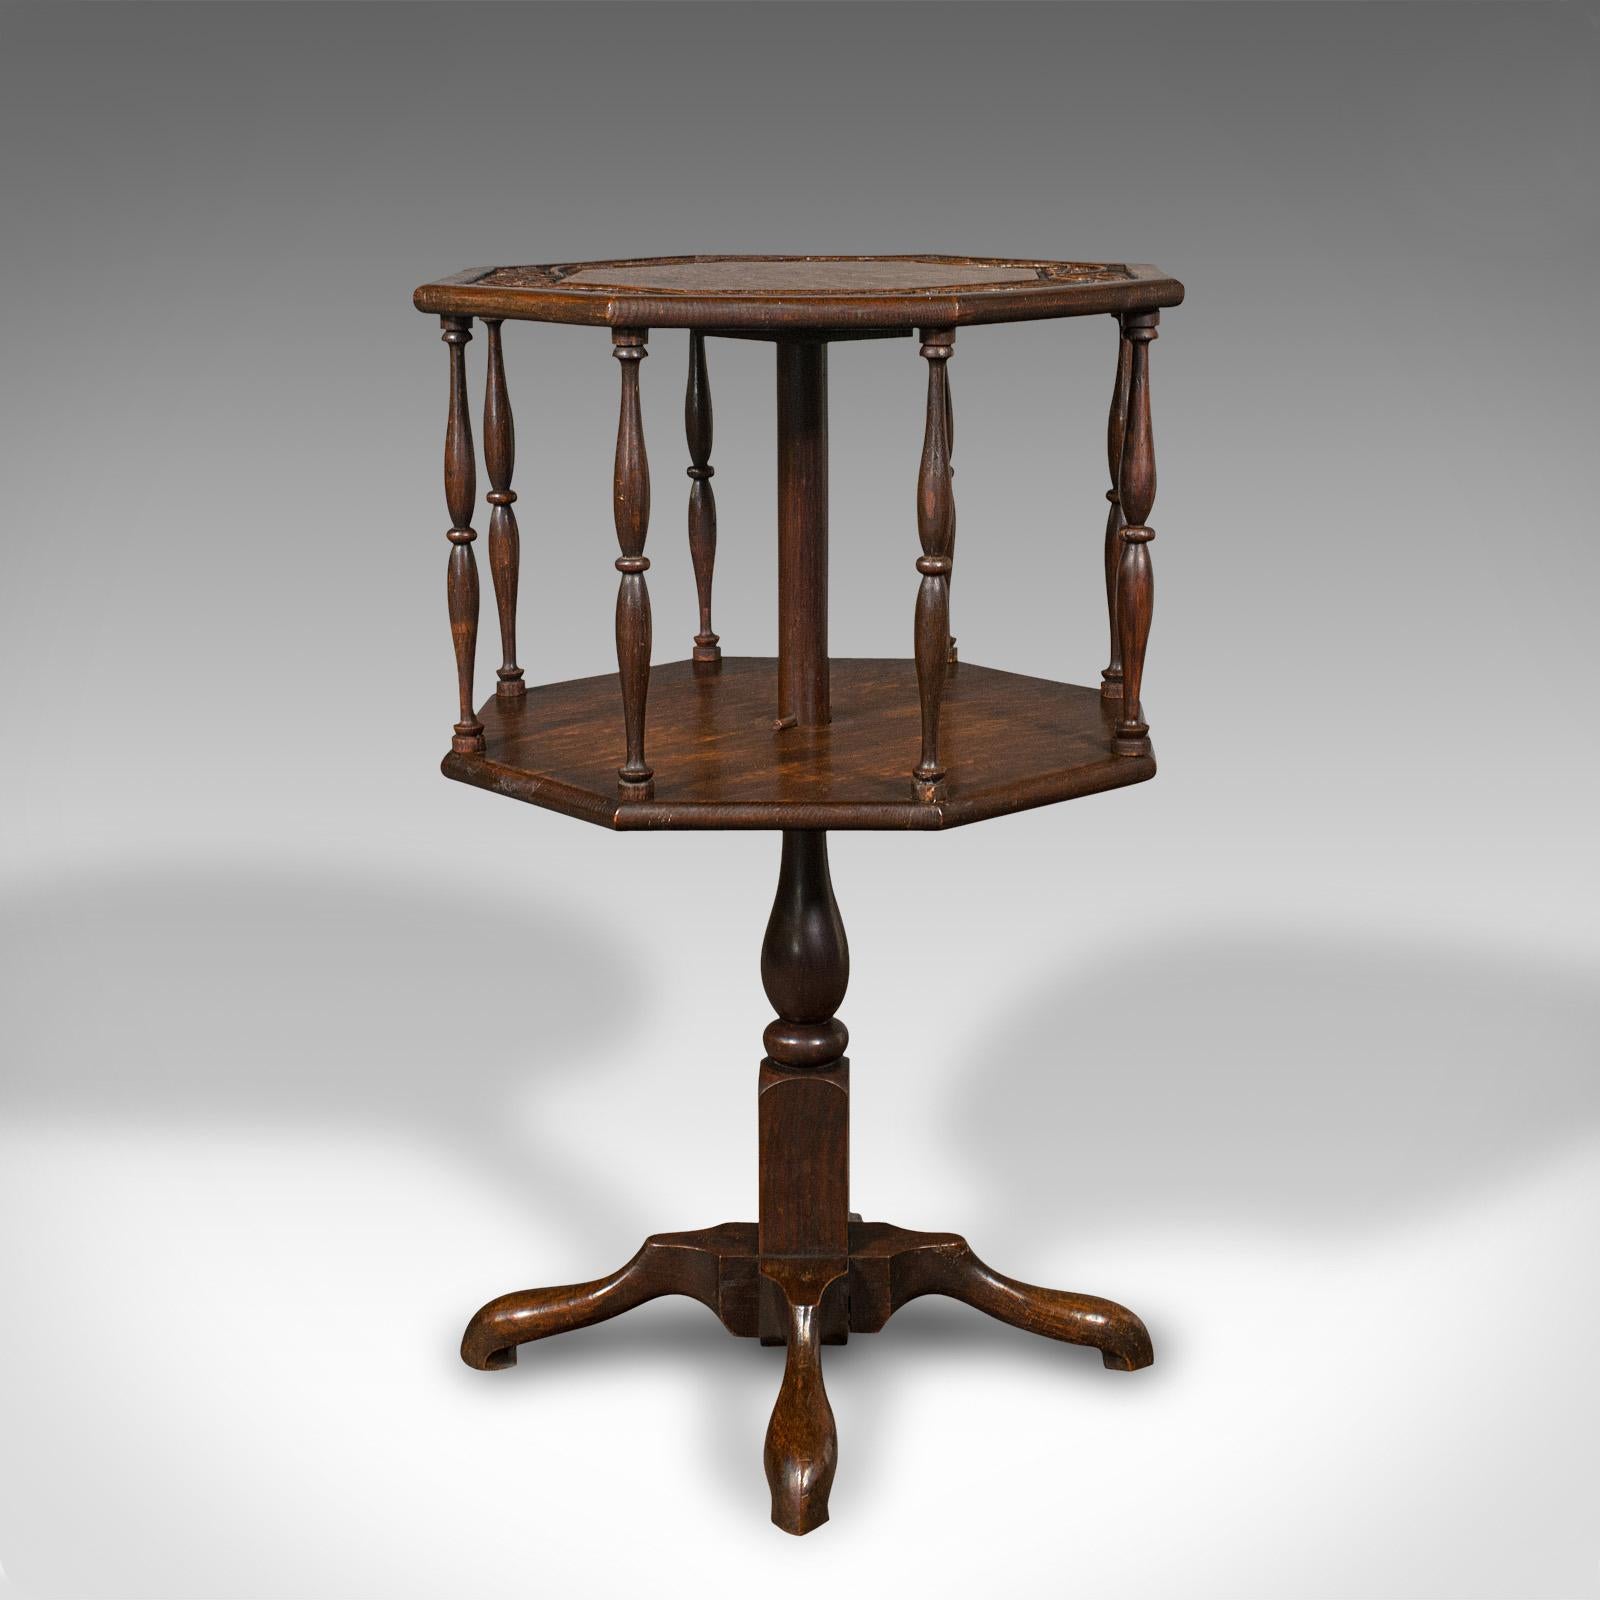 Il s'agit d'une ancienne table d'appoint octogonale. Une étagère à deux niveaux en chêne, de style Arts & Crafts, datant de la fin de la période victorienne, vers 1890.

Un complément polyvalent et attrayant pour le salon ou le coin